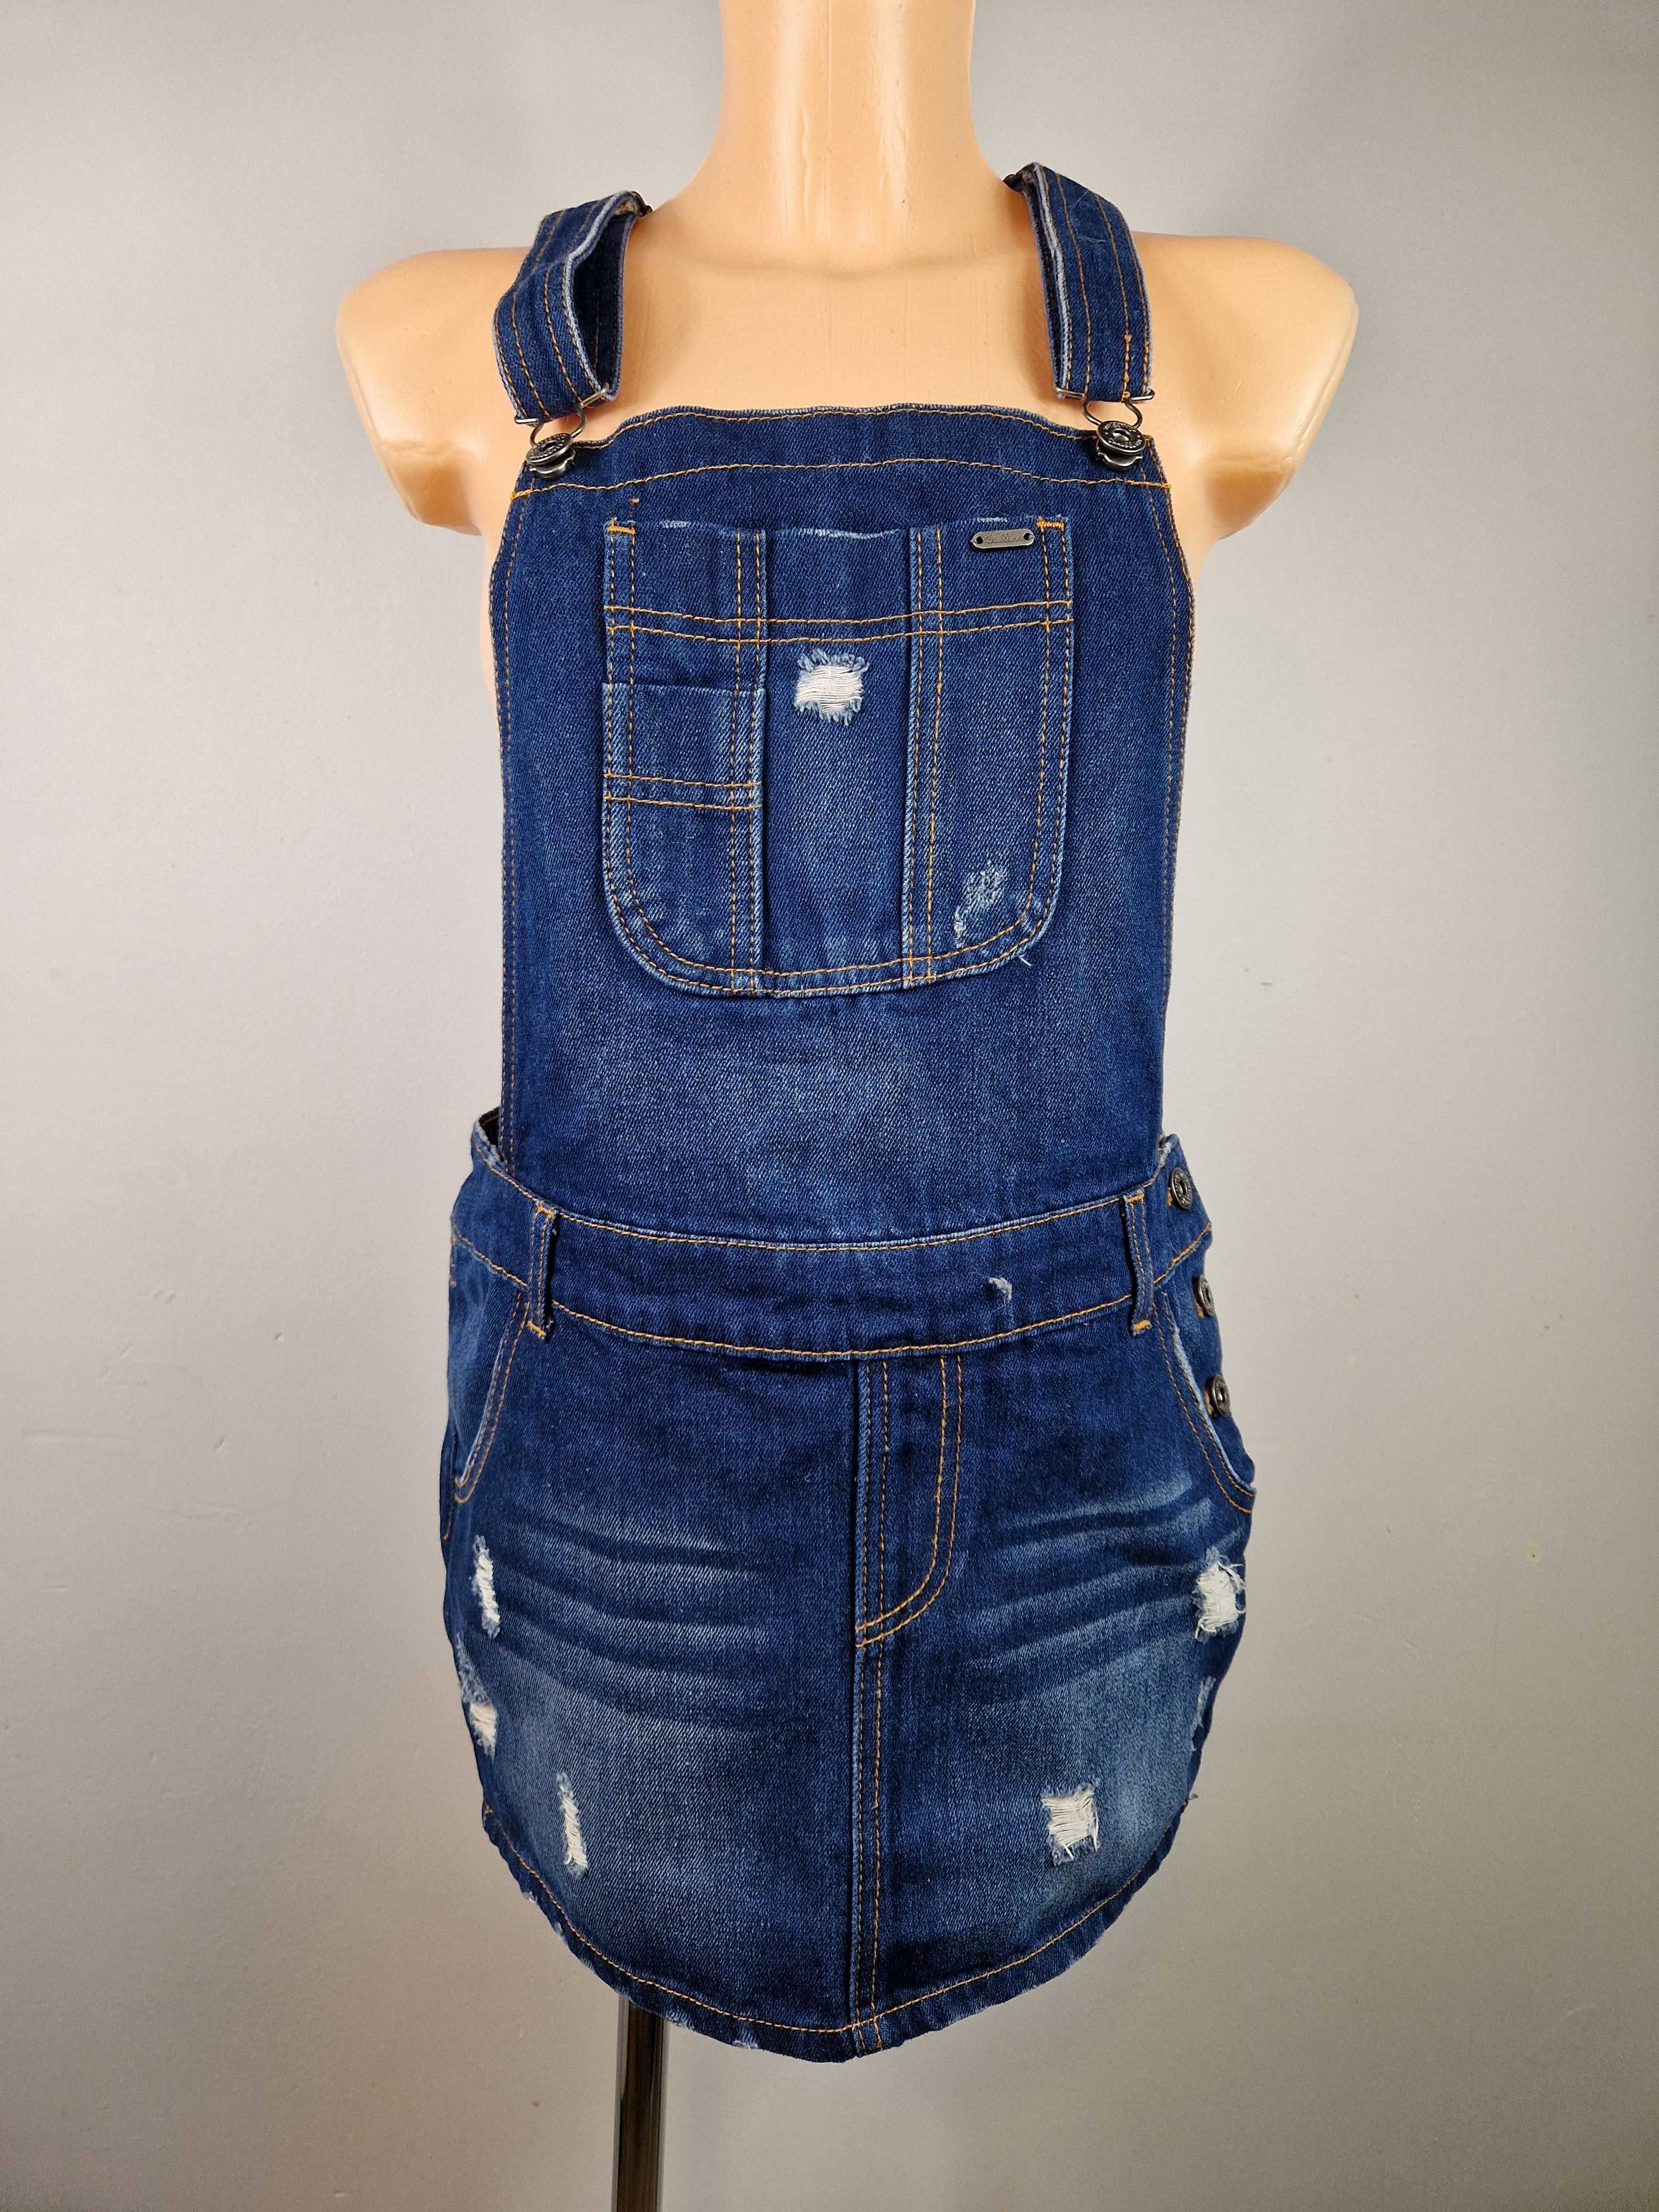 Spódniczka sukienka na szelkach ogrodniczki jeansowa dżinsowa S 36